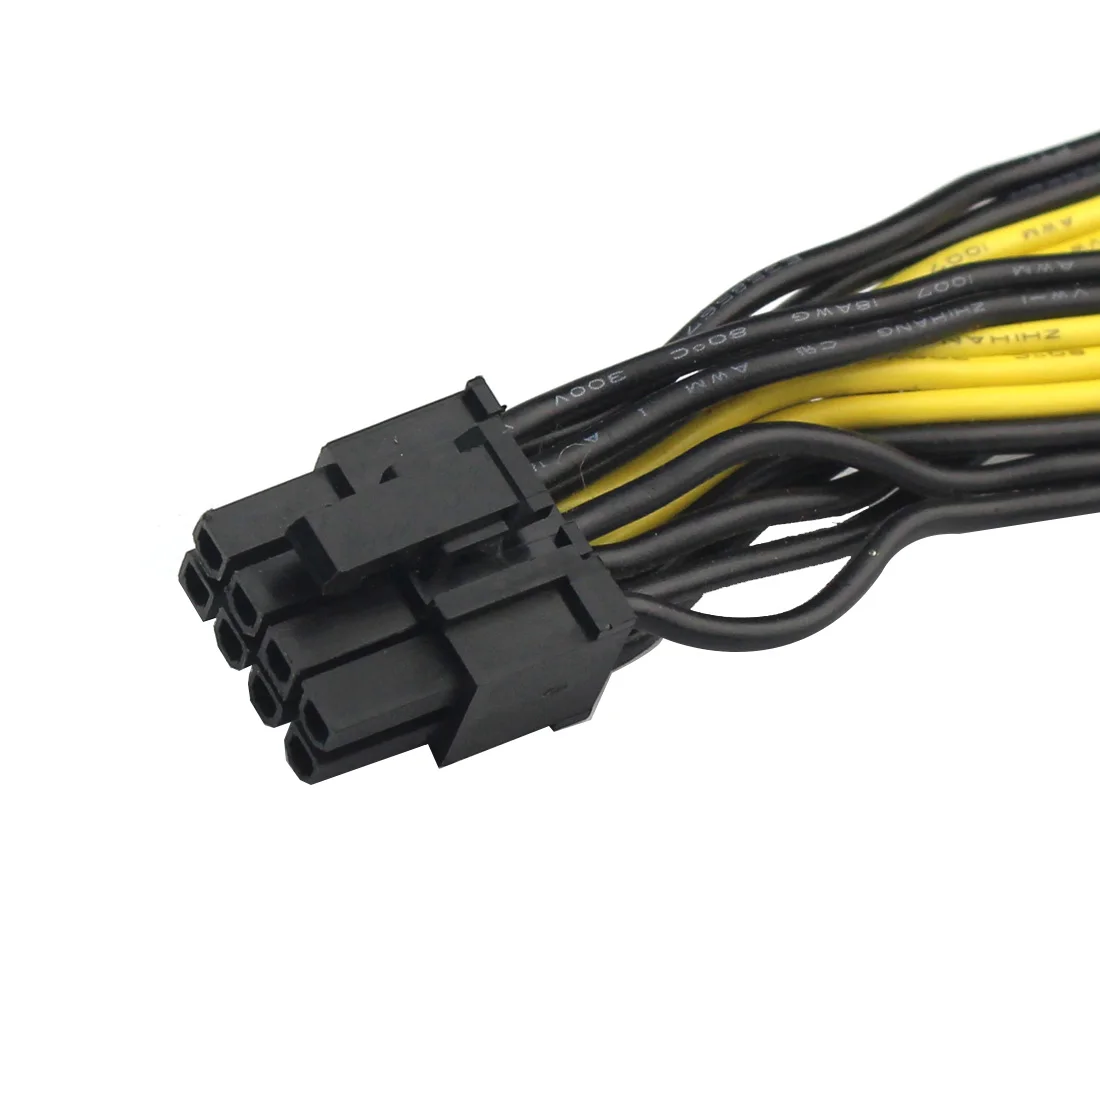 Модульные кабели питания. Кабель PSU PCI-E 8pin. Кабель PSU PCI-E 8pin Seasonic. Провод питания PCI-E 8pin для модульного блока питания. Модульный кабель питания шесть пин.